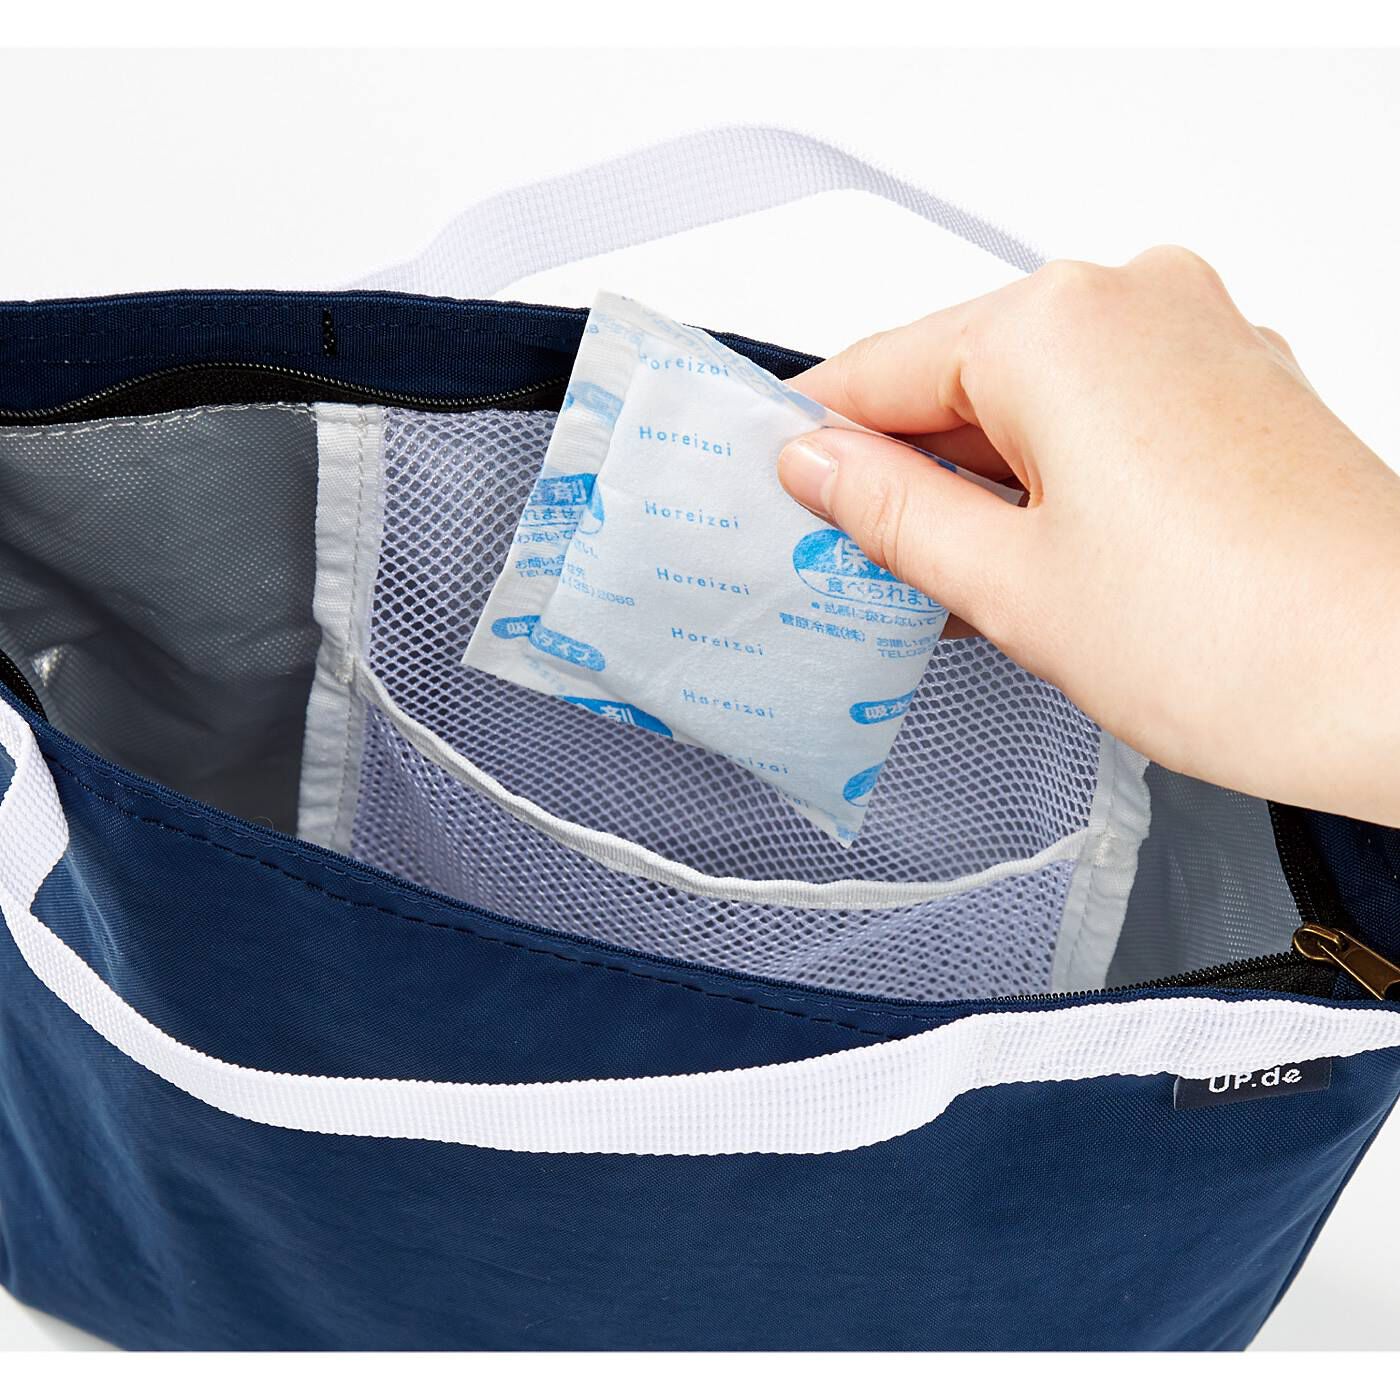 Real Stock|Up.de　はっ水加工で洗えてたためる 内側アルミ蒸着仕様の便利なデイリーバッグ|保冷剤を入れられるポケット。使わないときは本体を収納できます。